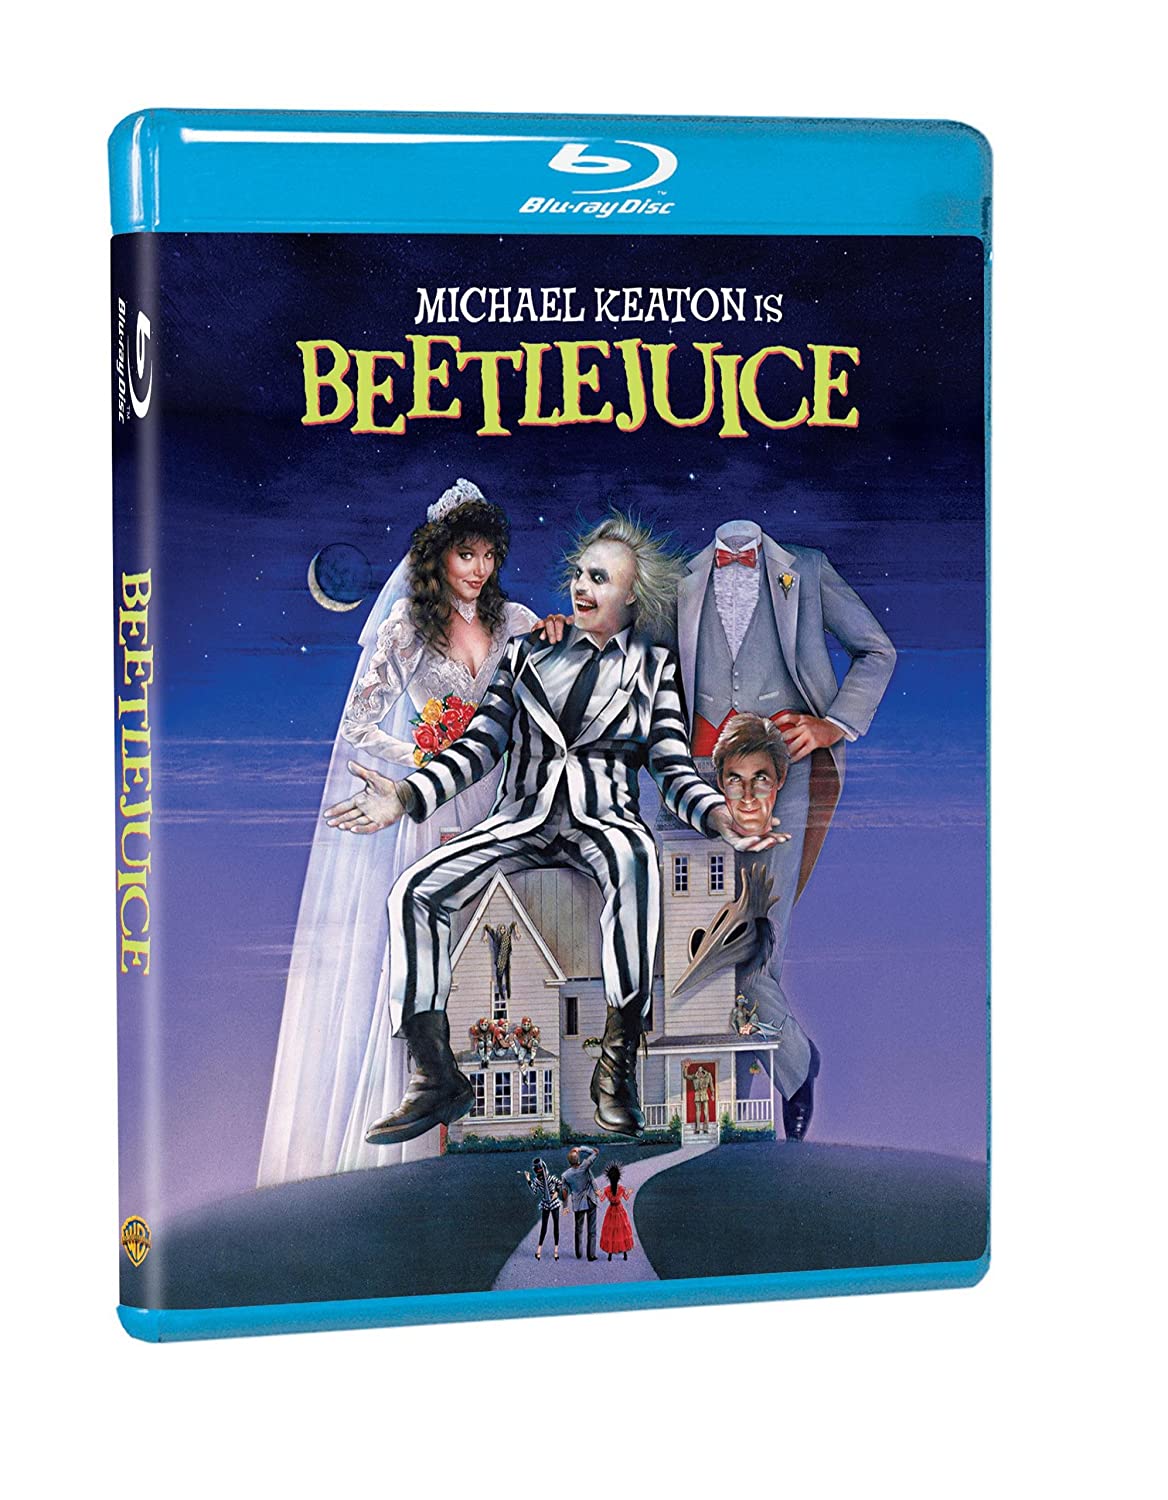 Beetlejuice - Blu-ray (Used Once)